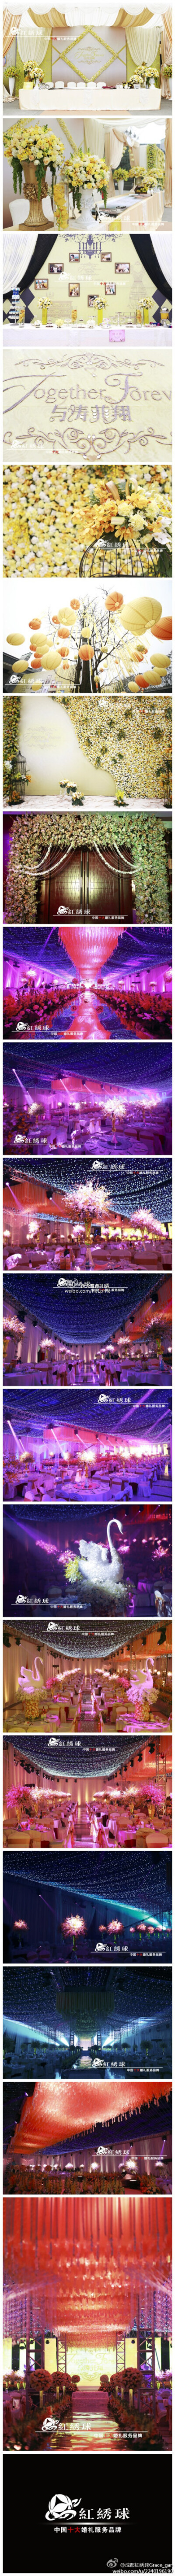 璀璨的星空点亮了繁华如梦的婚礼现场。2013-1-27浪漫唯美的主题婚礼“与涛菲翔”在峨眉山月酒店华丽呈现。炫丽灯光让现场百万花朵绽放出低调的奢华。